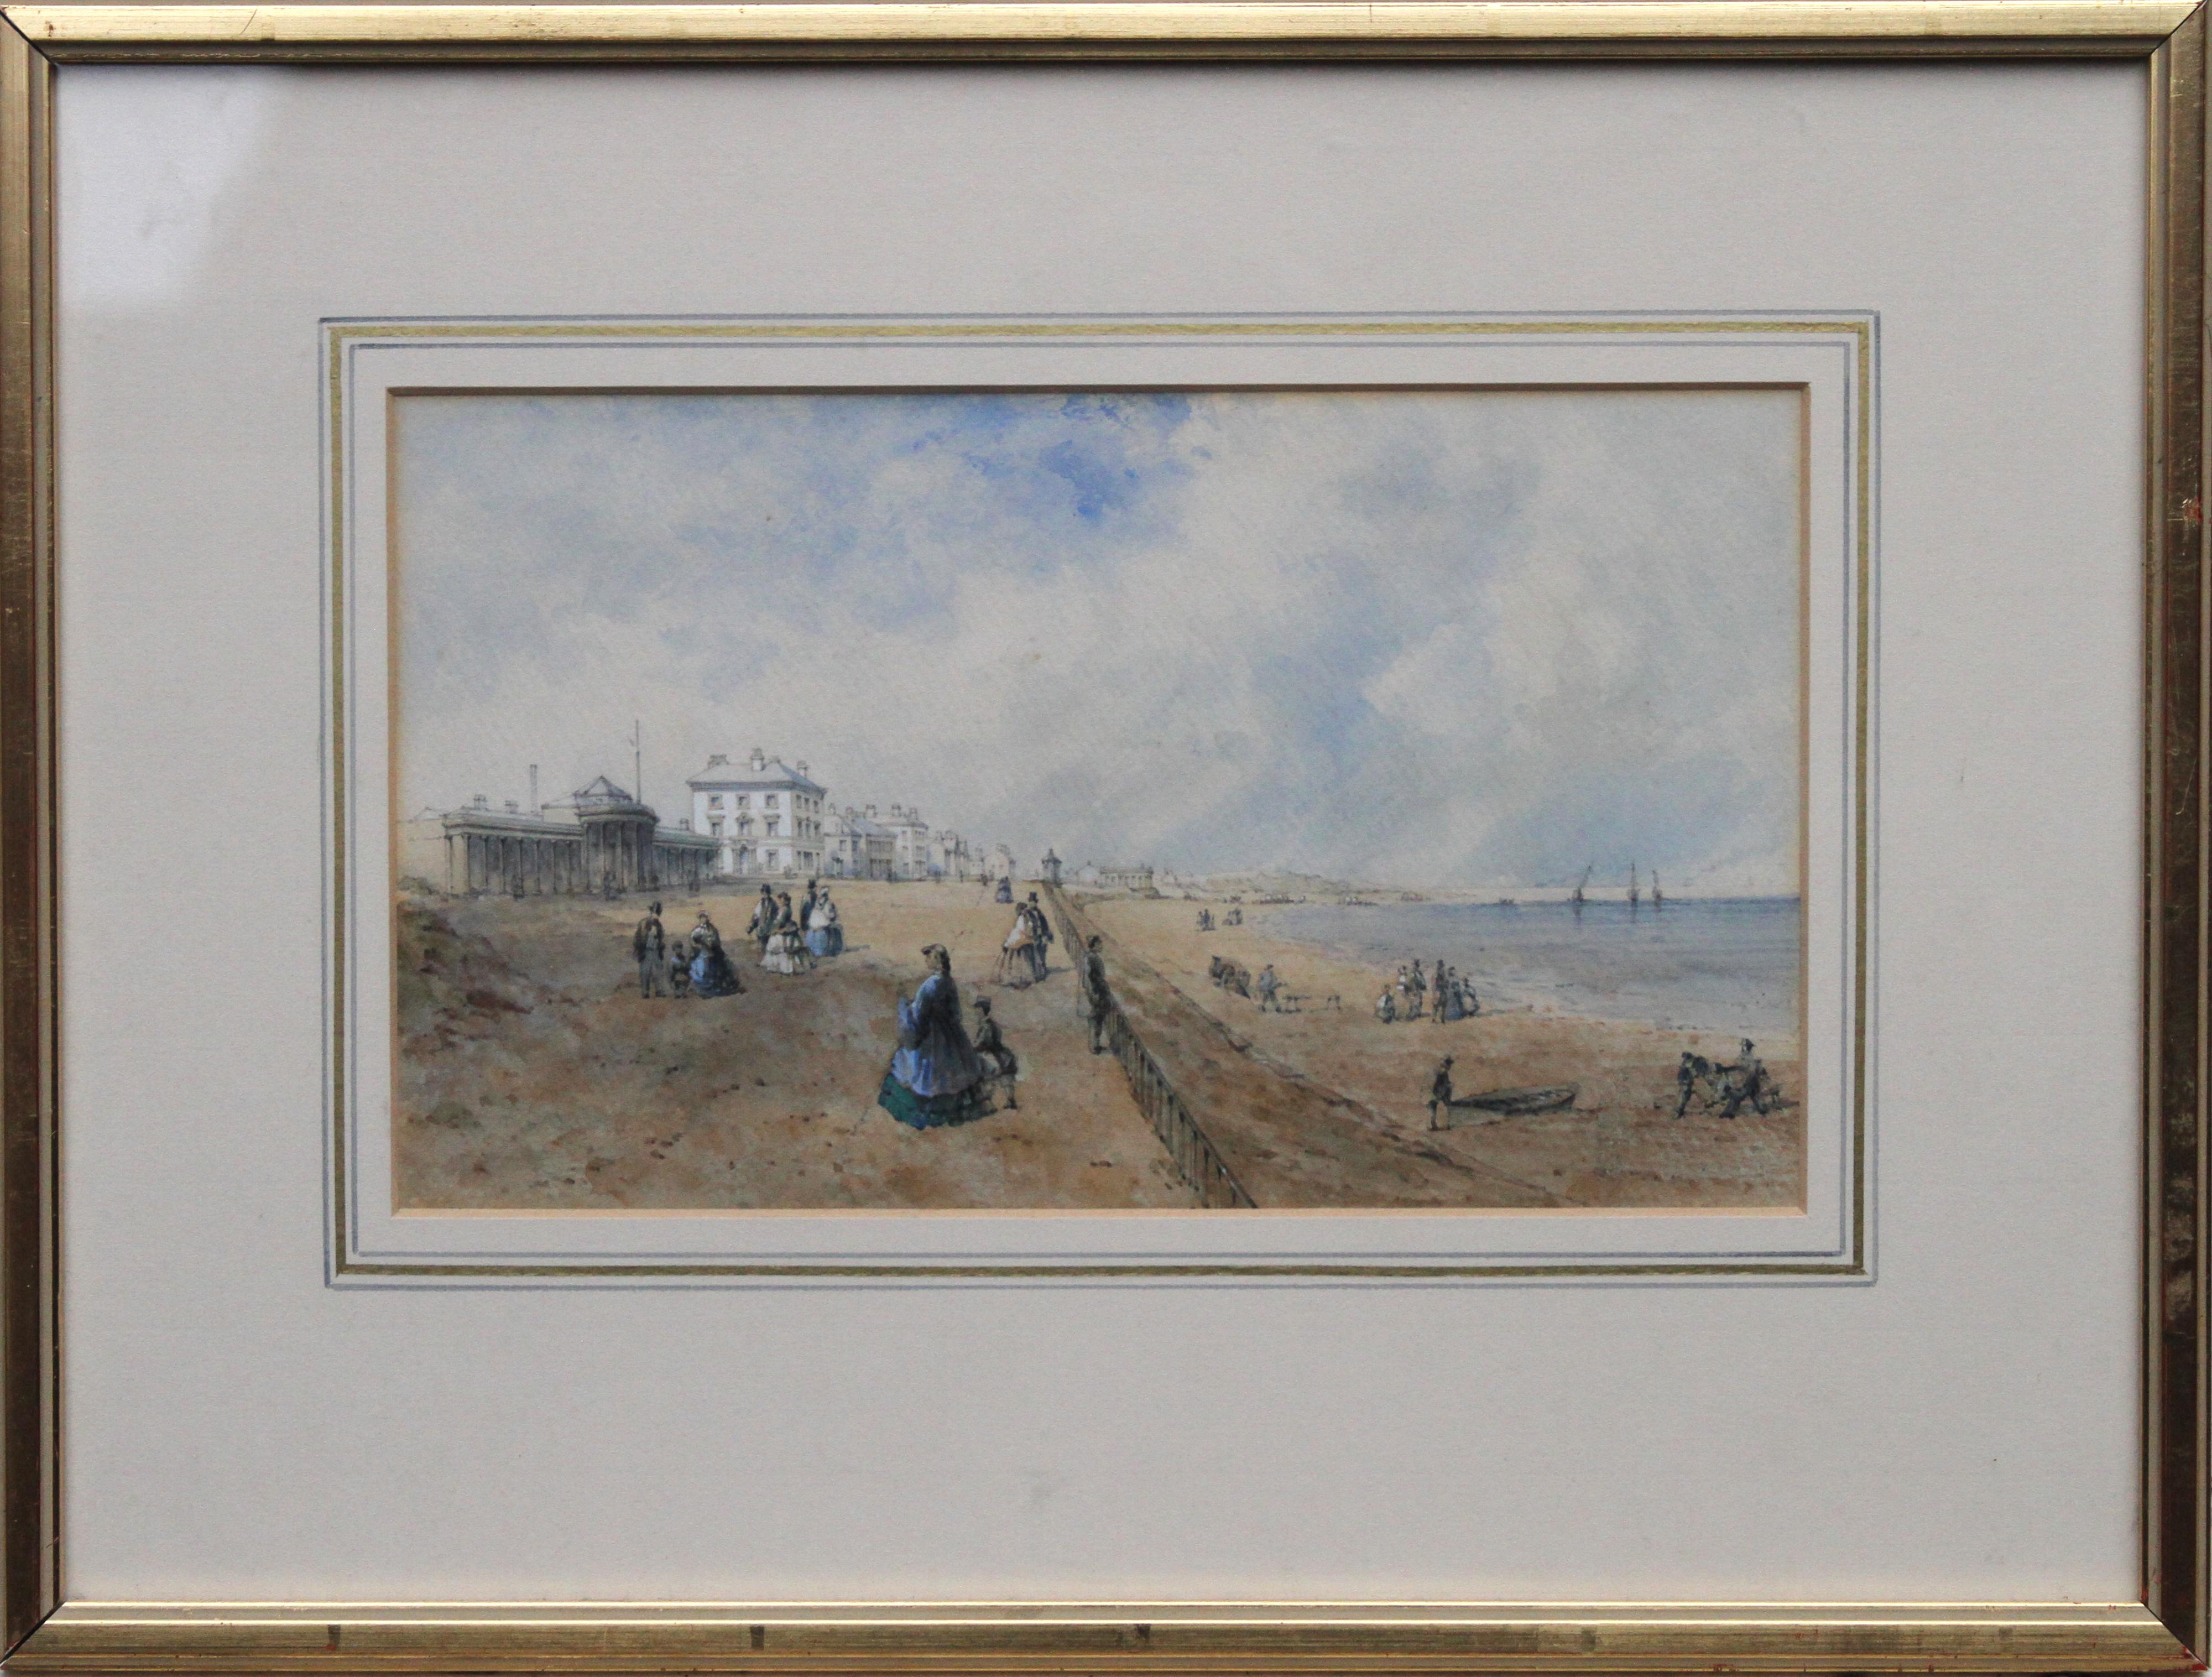 Promenade at Southport - Acquerello di paesaggio costiero dell'arte britannica del XIX secolo